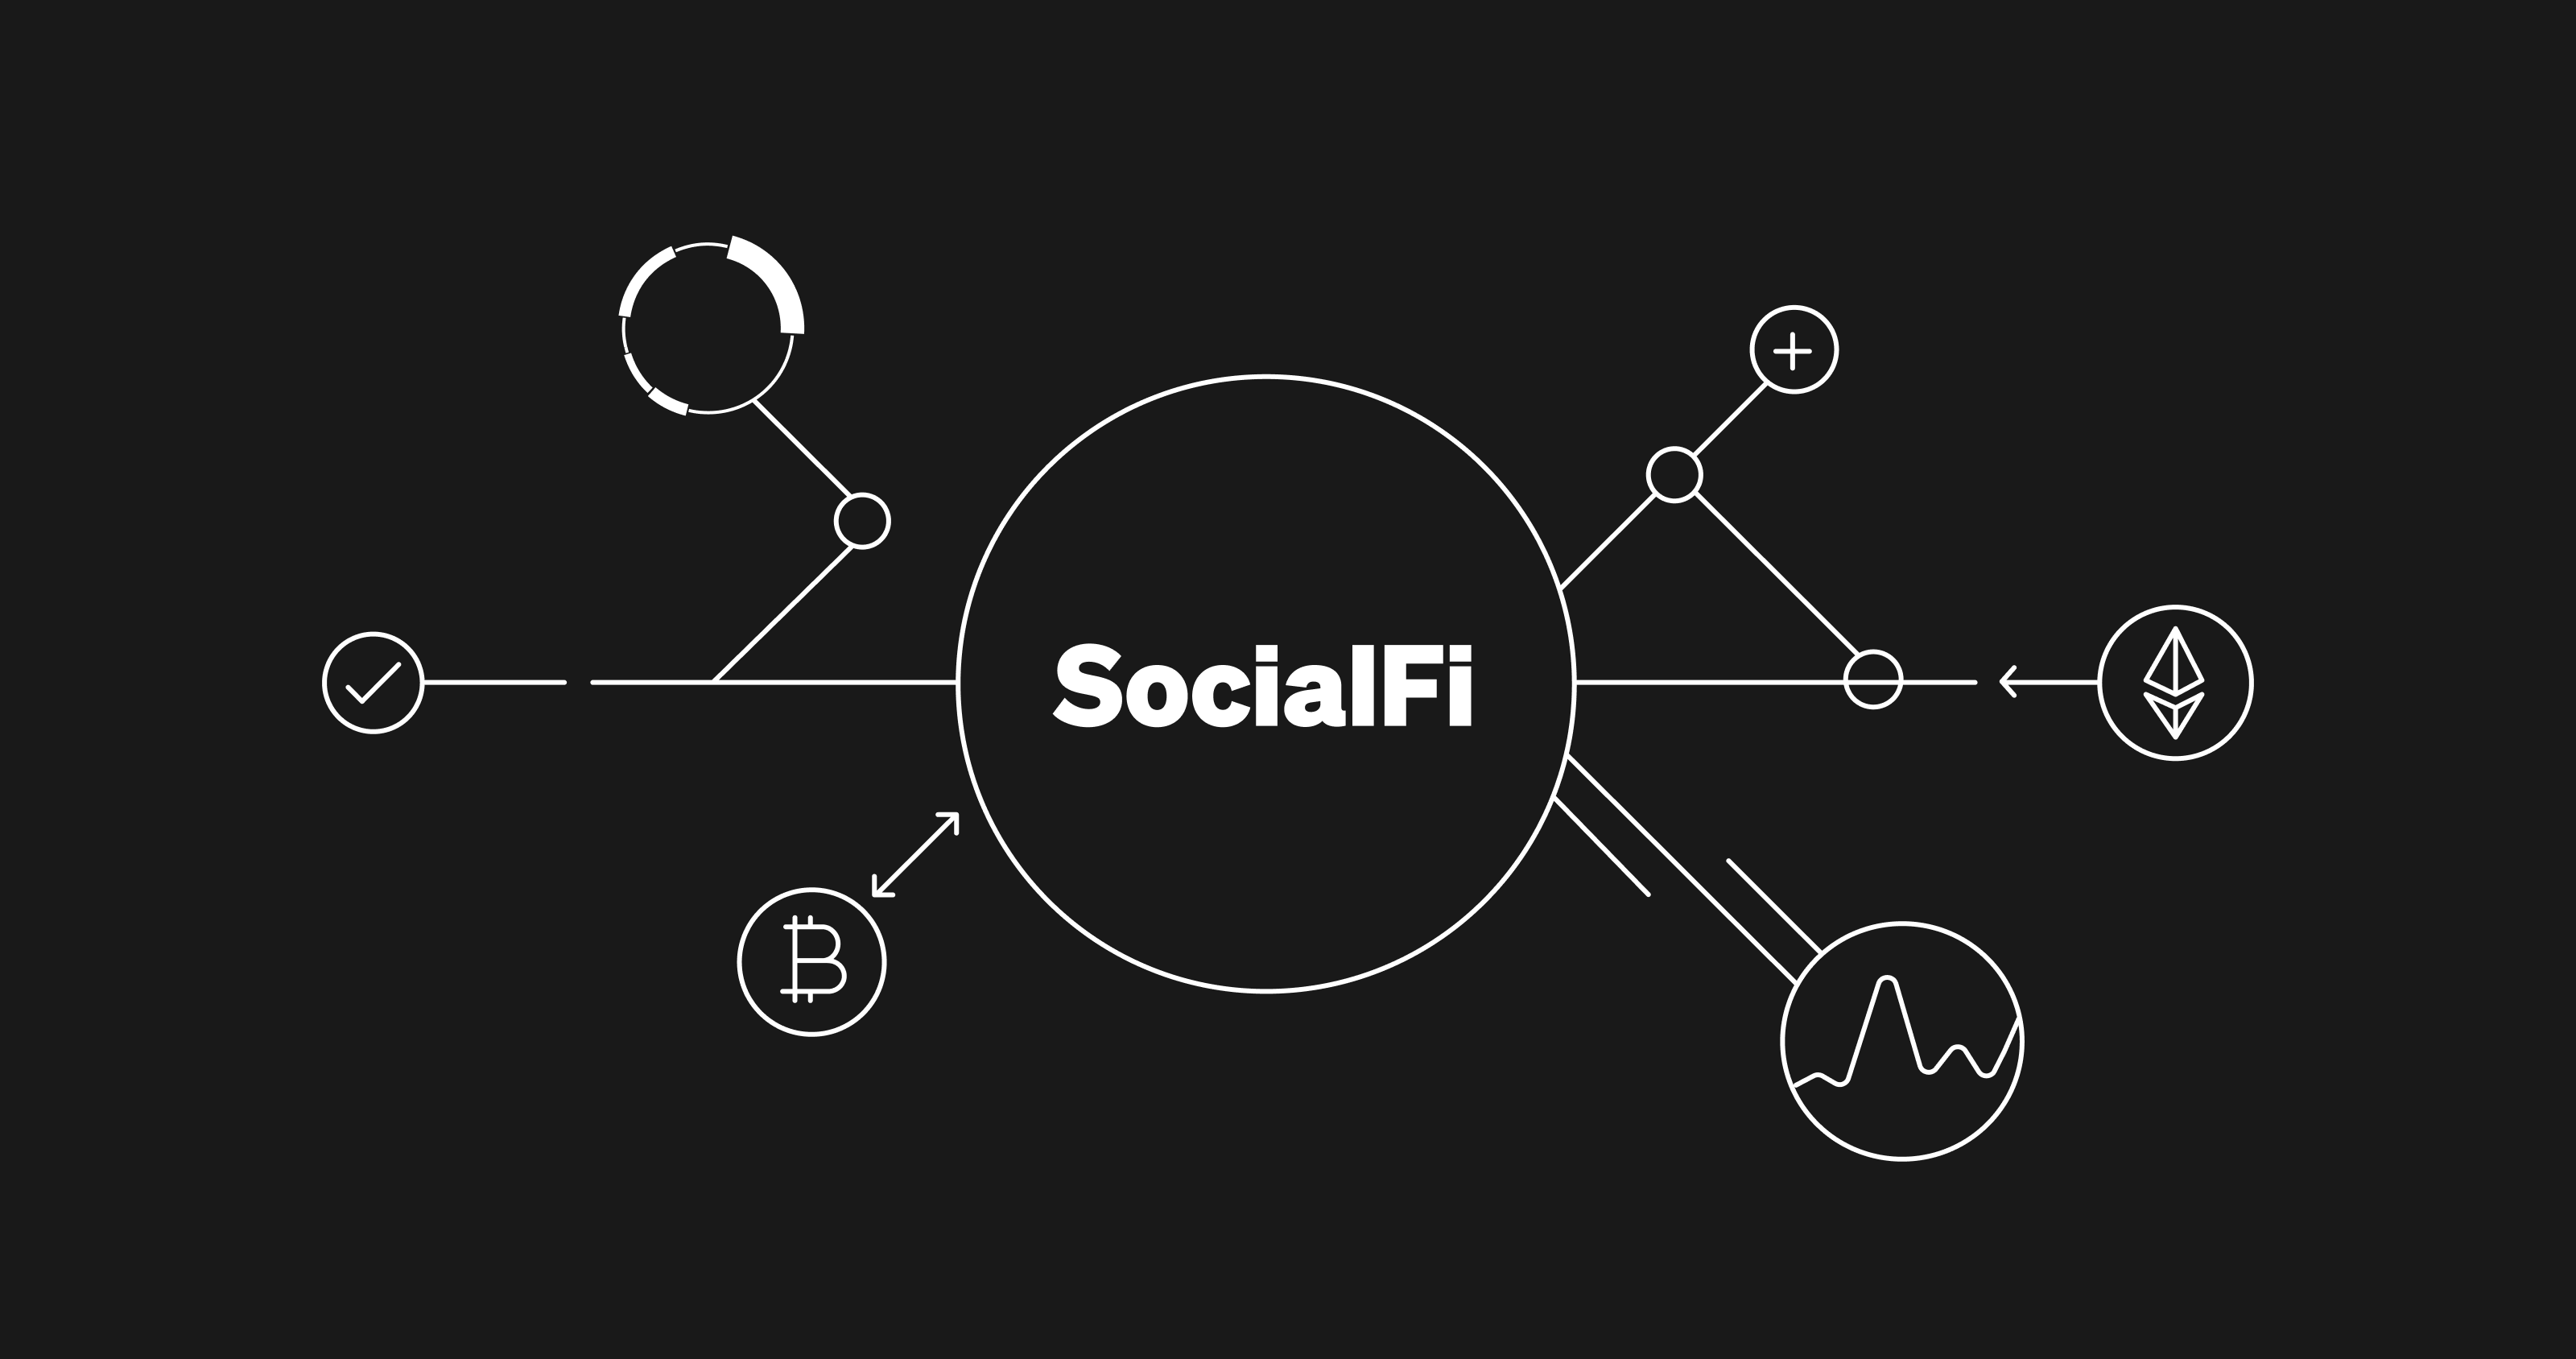 How Does SocialFi Work?